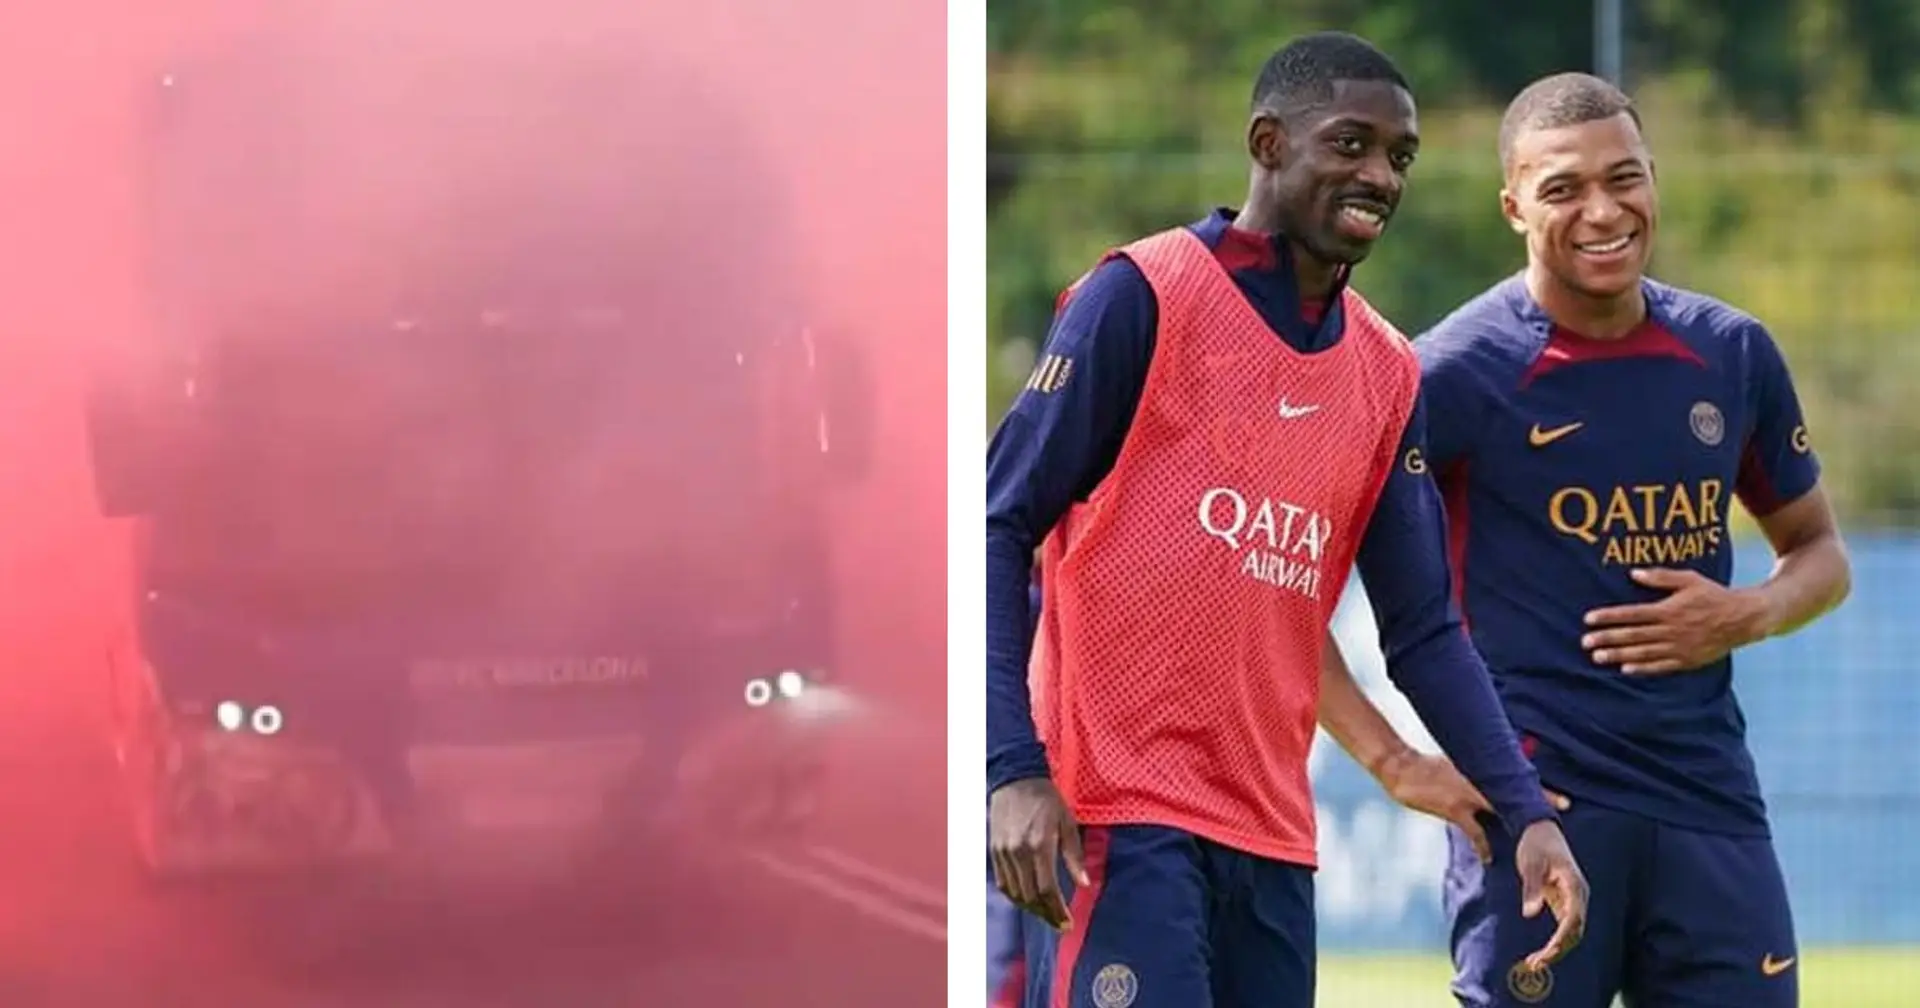 Confirmé : Les fans ont bel et bien confondu le bus du Barça à celui du PSG et l'a caillassé par erreur